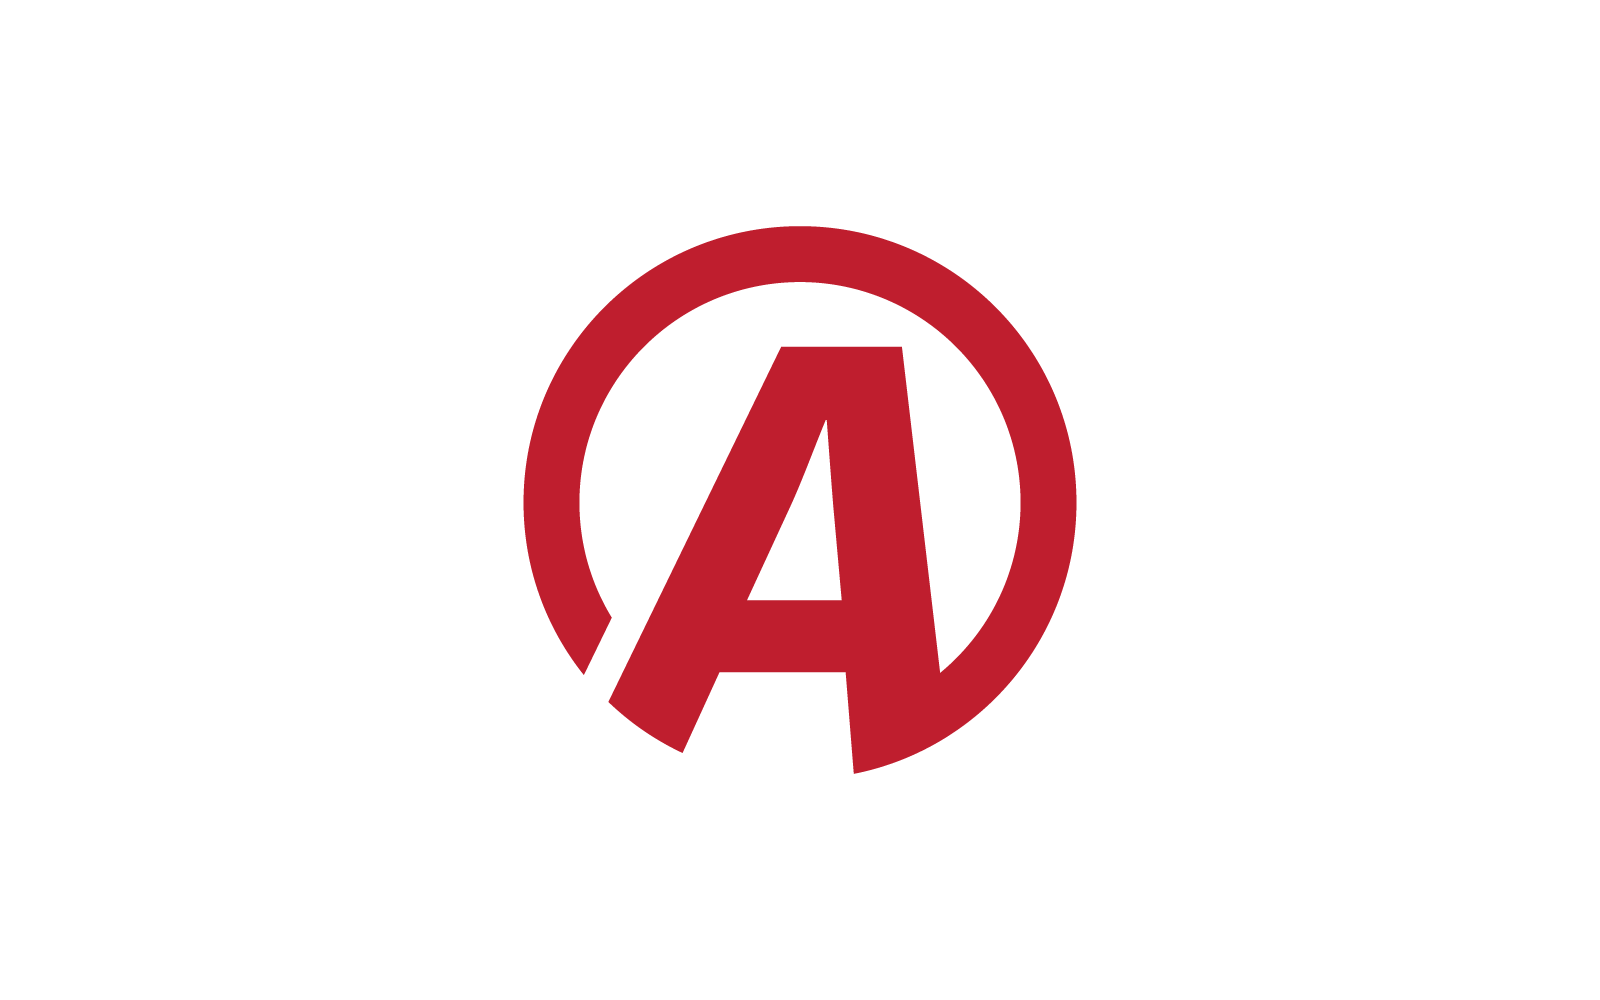 Modern A Initial letter alphabet font logo vector design Logo Template